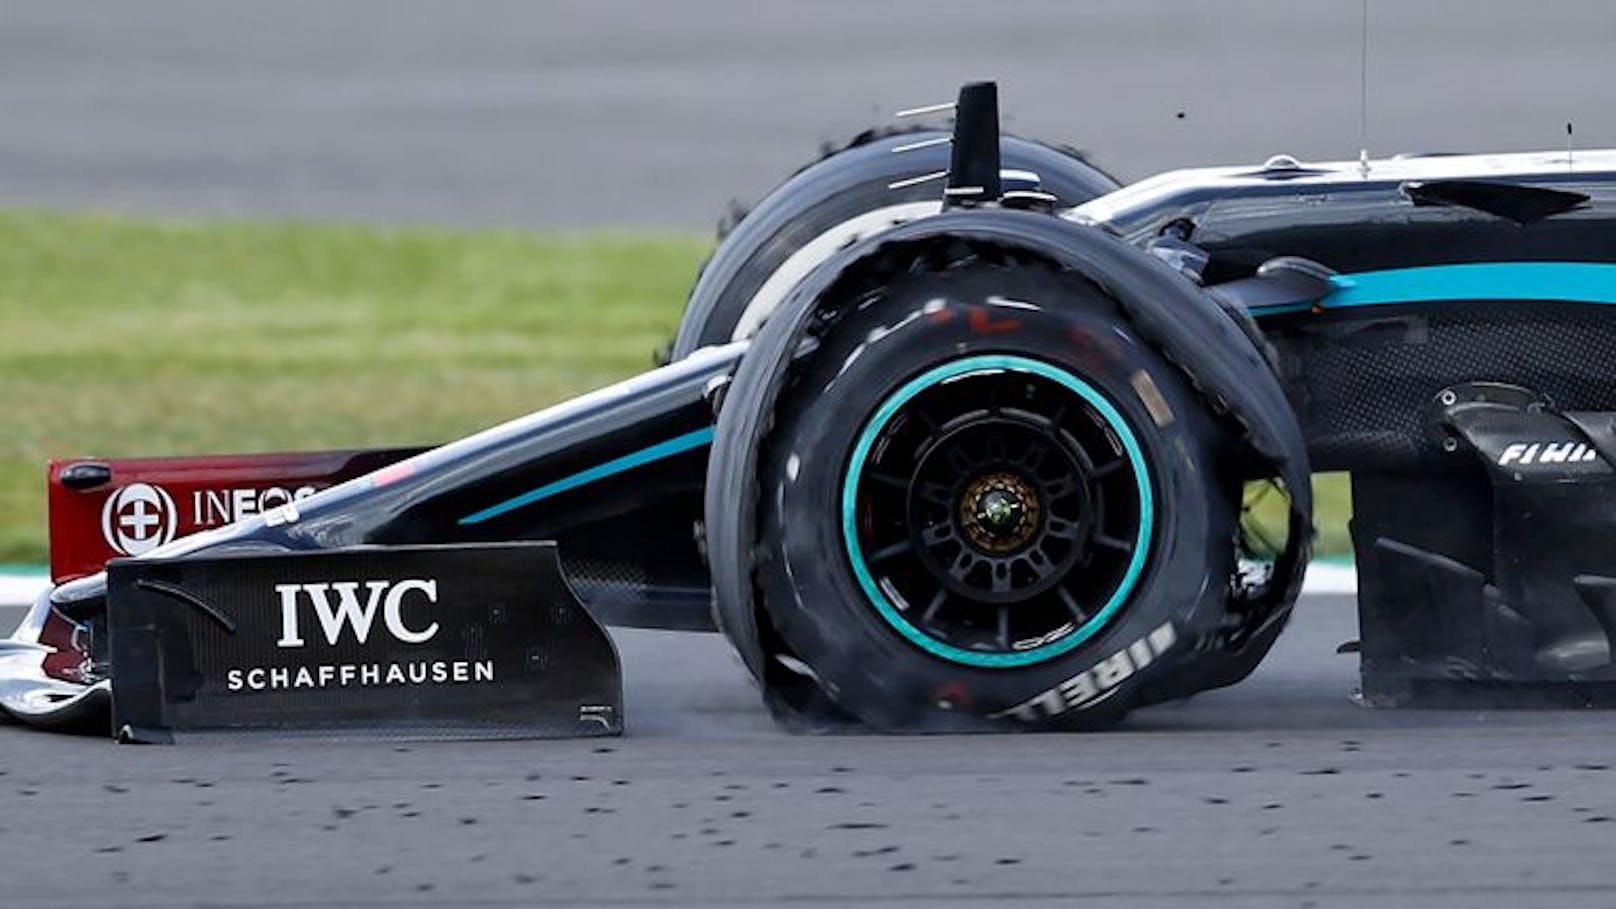 Herzschlag-Finish beim ersten Grand Prix von Silverstone. Lewis Hamilton platzte der Reifen, auf drei Rädern rettete sich der Brite vor dem heraneilenden Max Verstappen zum Sieg ins Ziel.